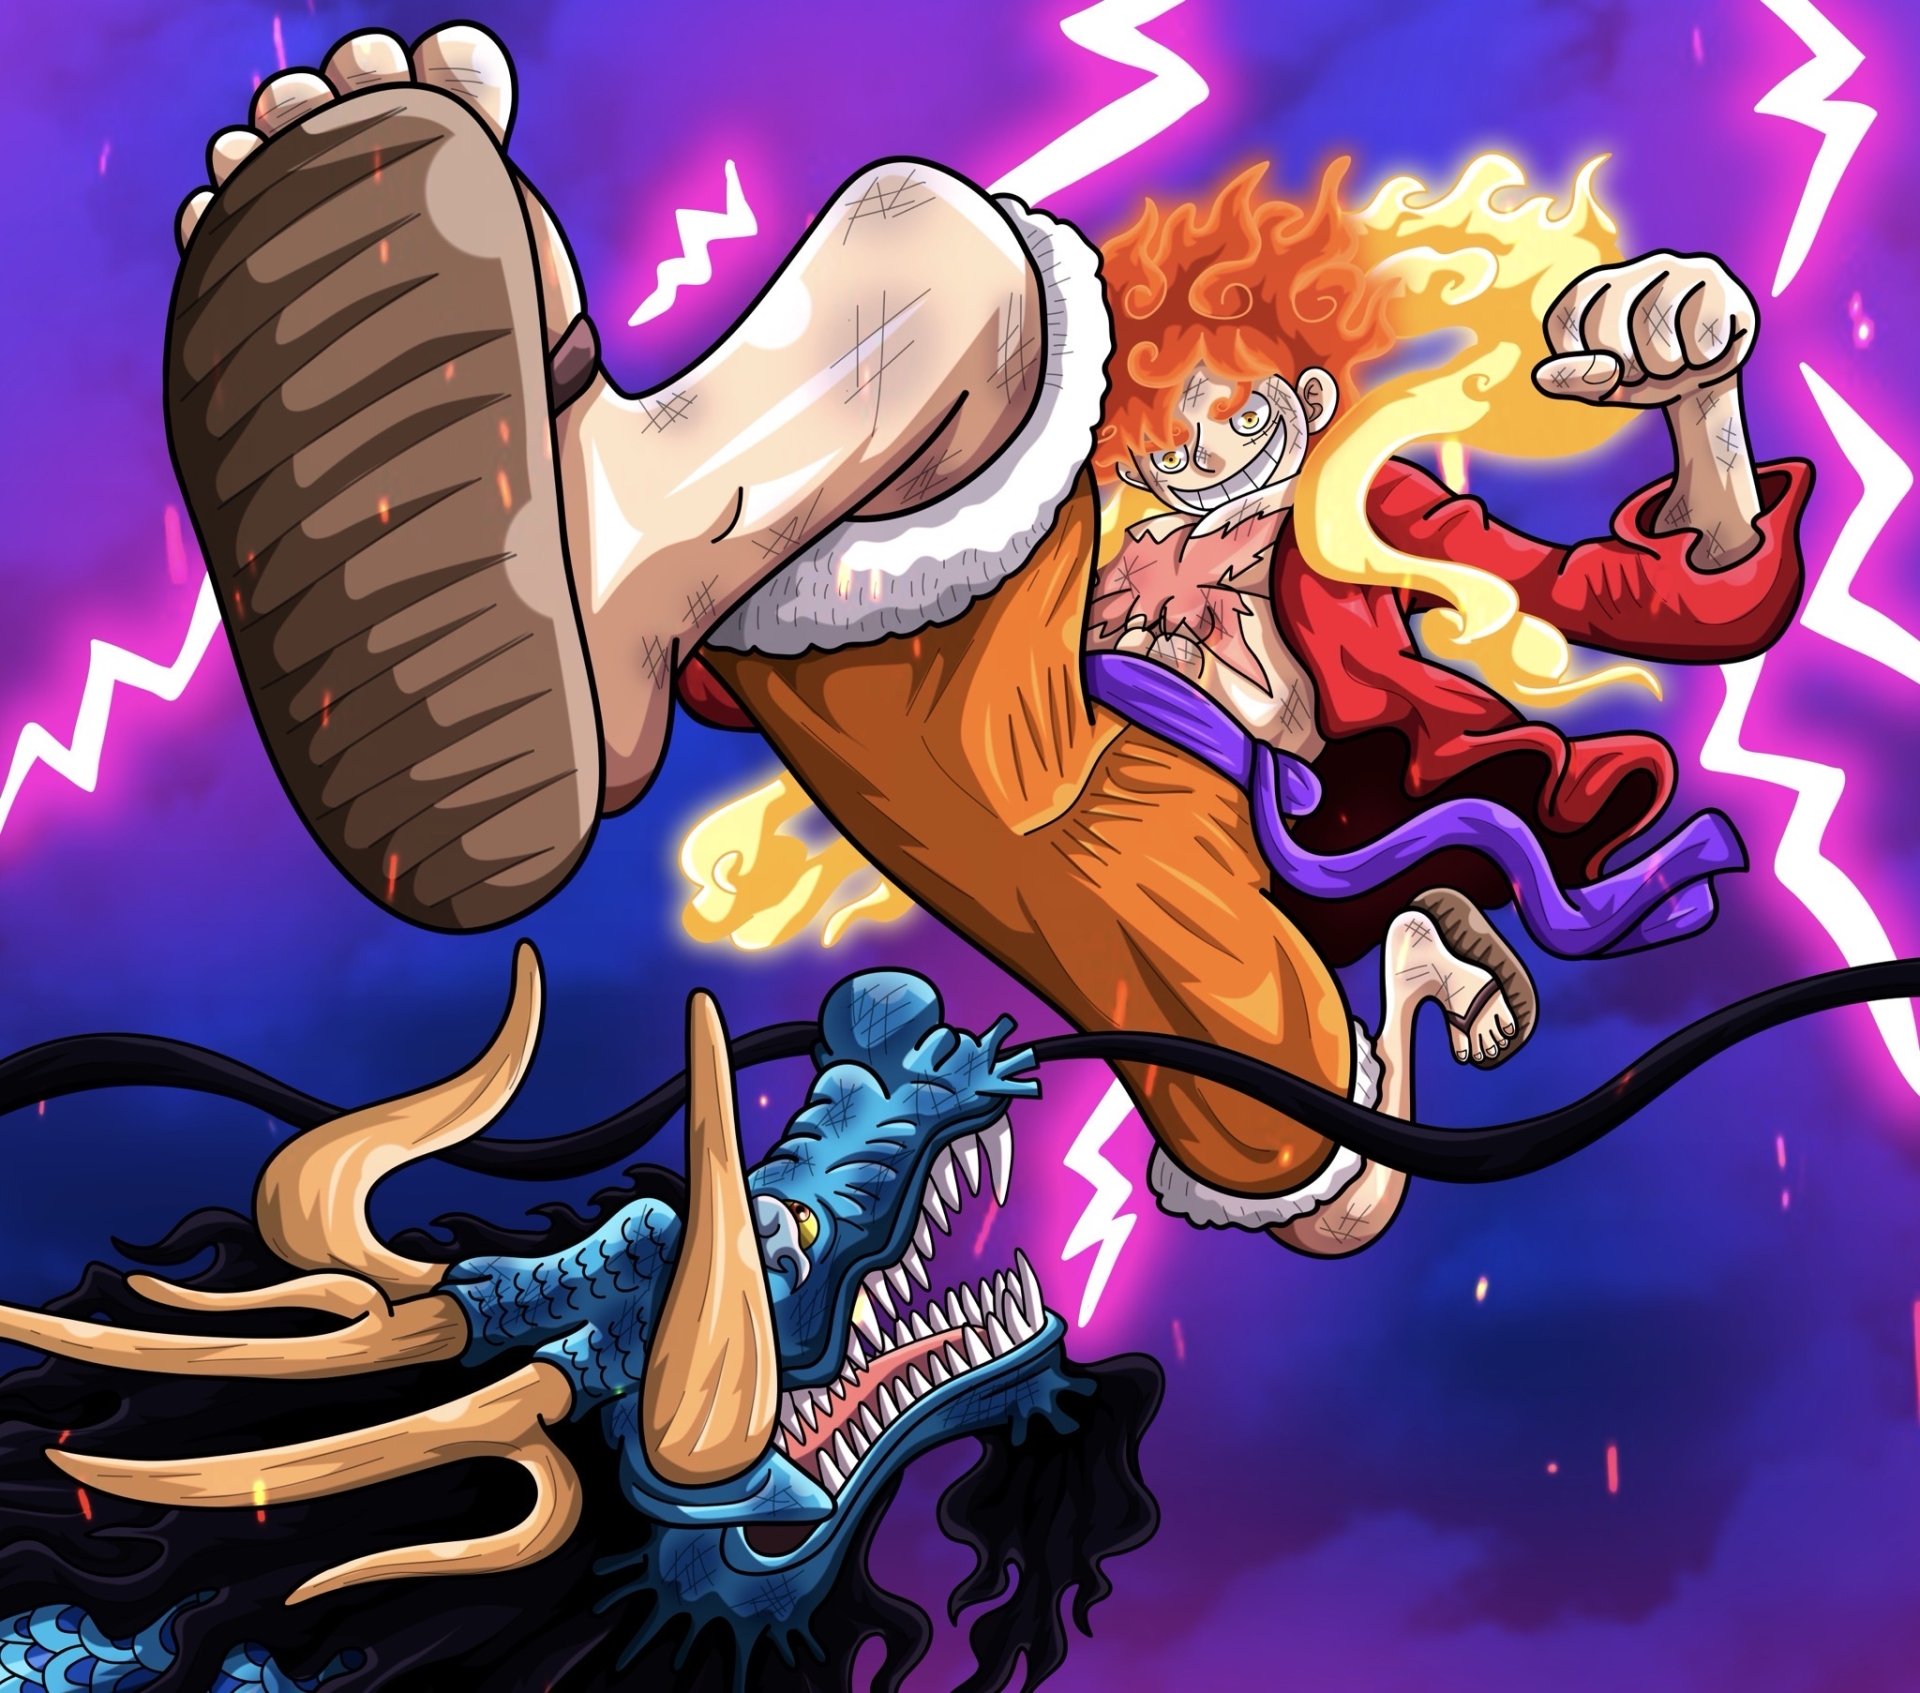 Gear 5 Luffy vs Kaido, One Piece, Gear 5th / Gear Fifth